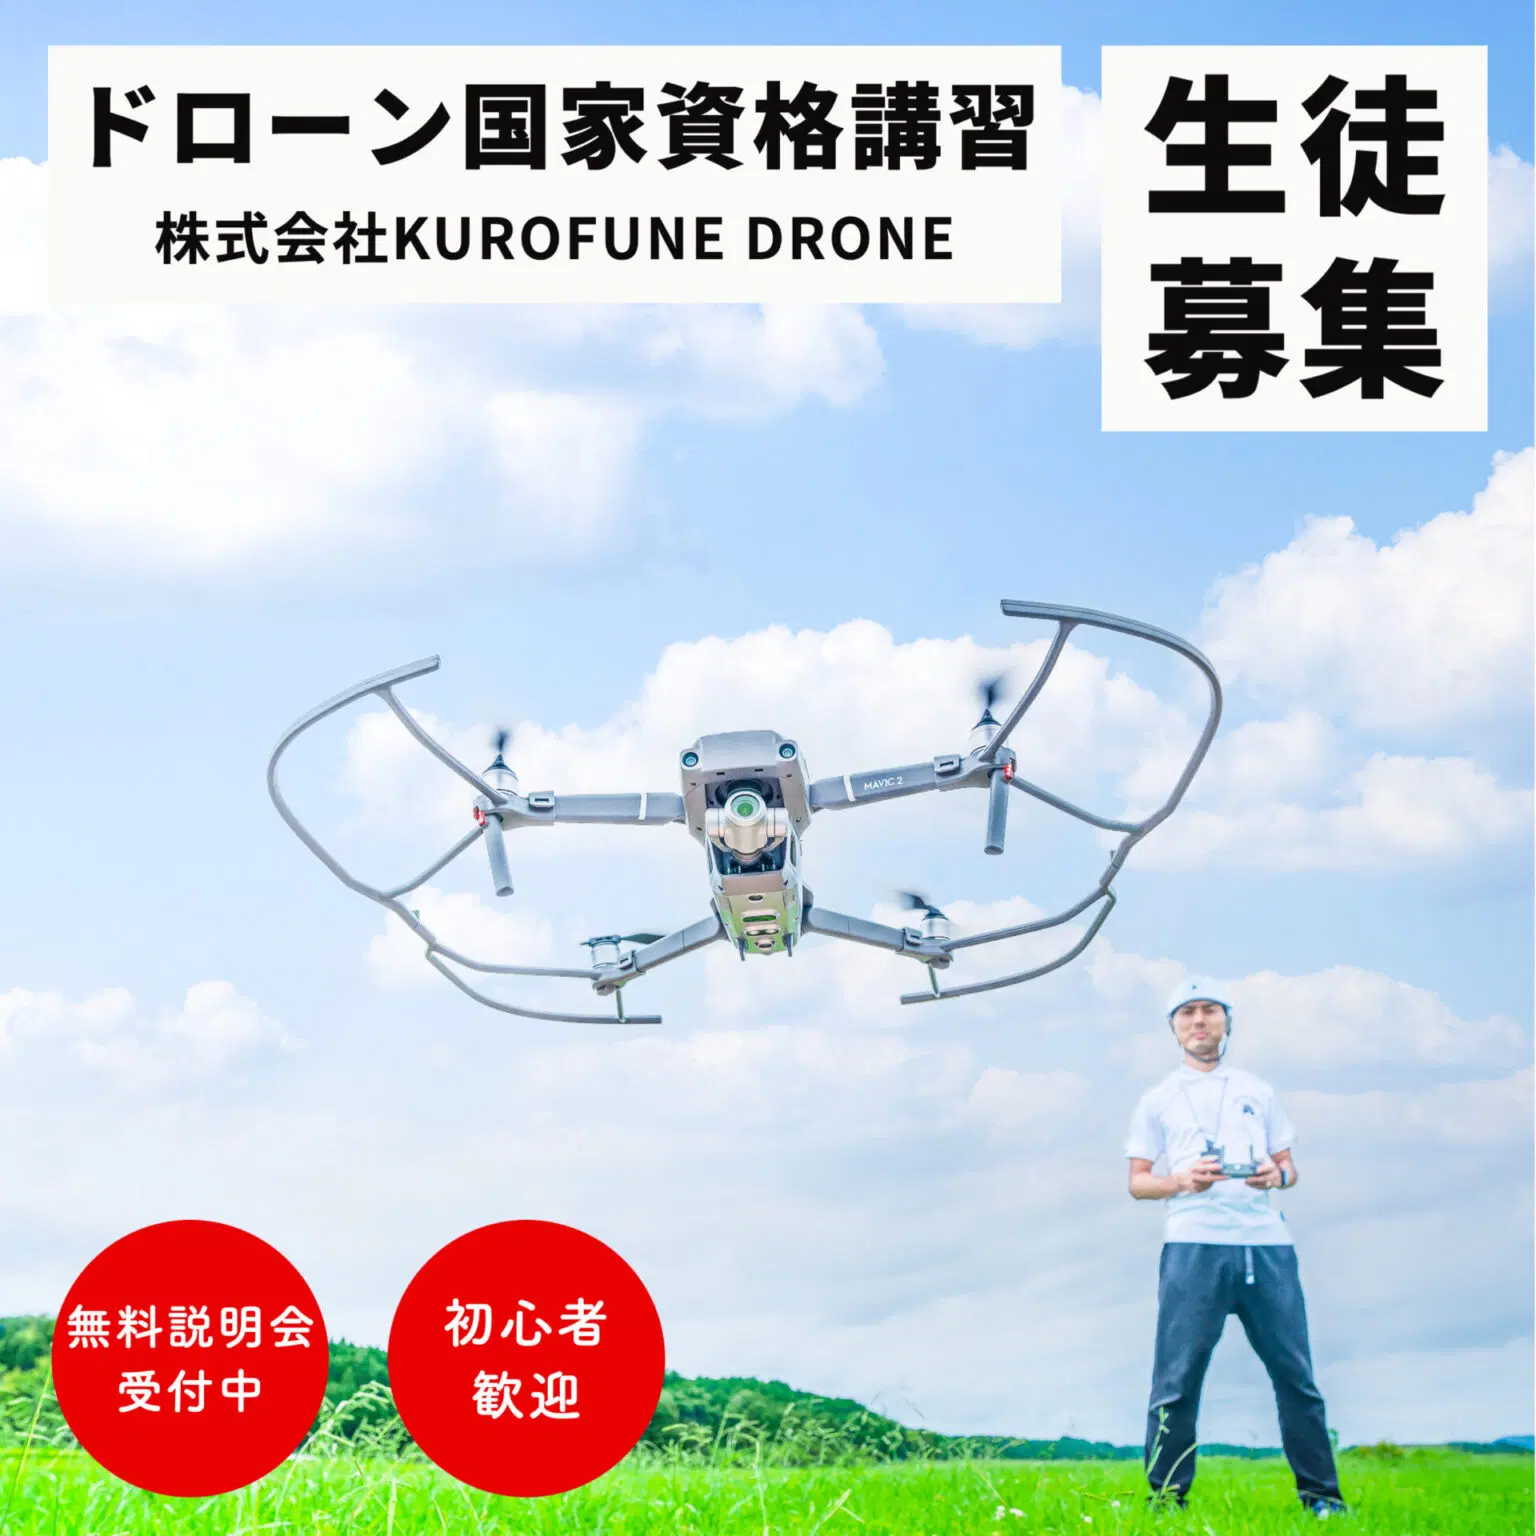 株式会社KUROFUNE DRONEのイメージ画像